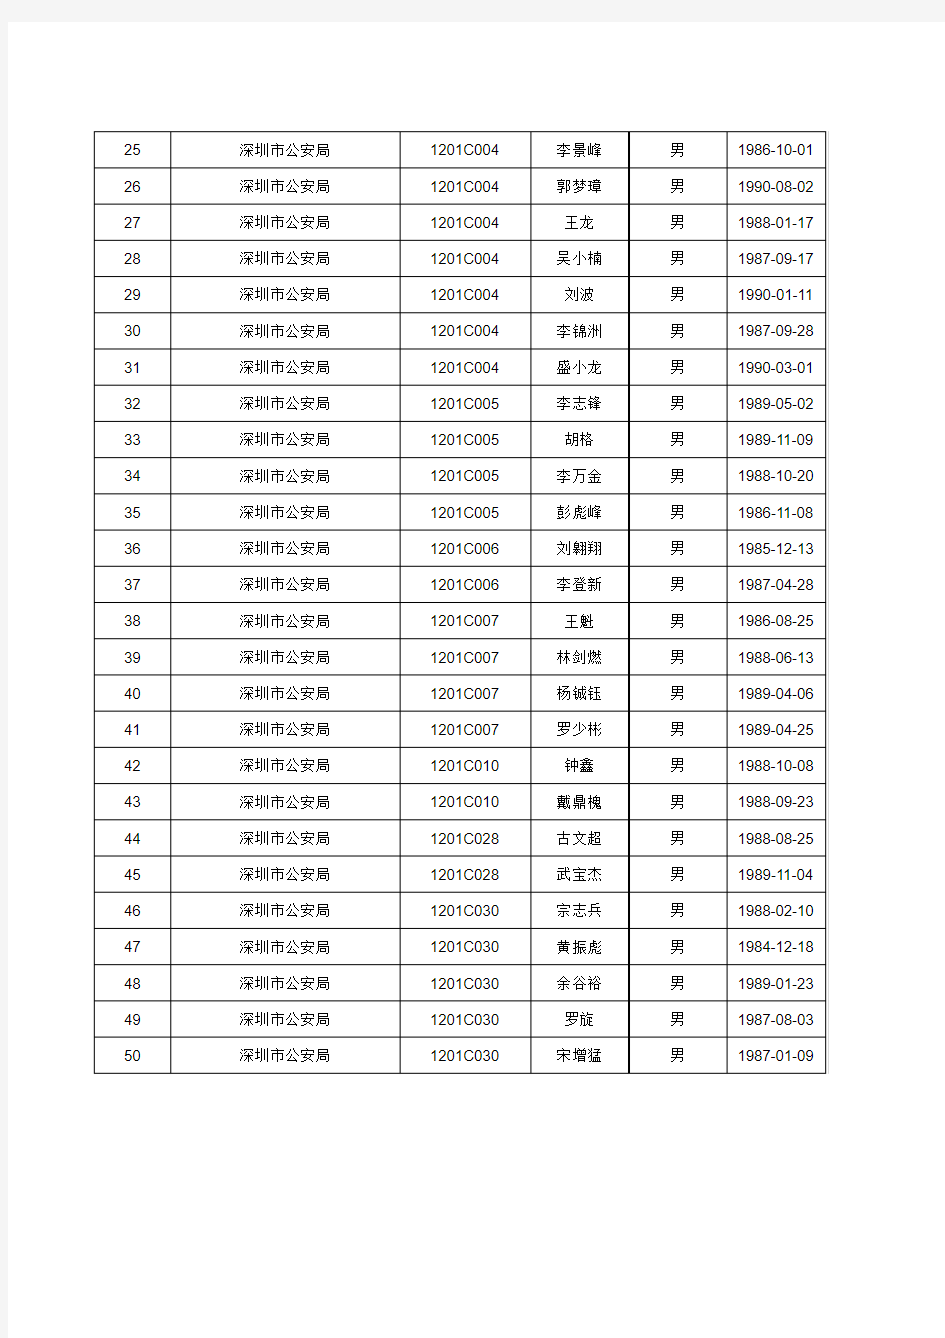 拟聘人员公示名单(四)xls - 深圳市人力资源和社会保障局